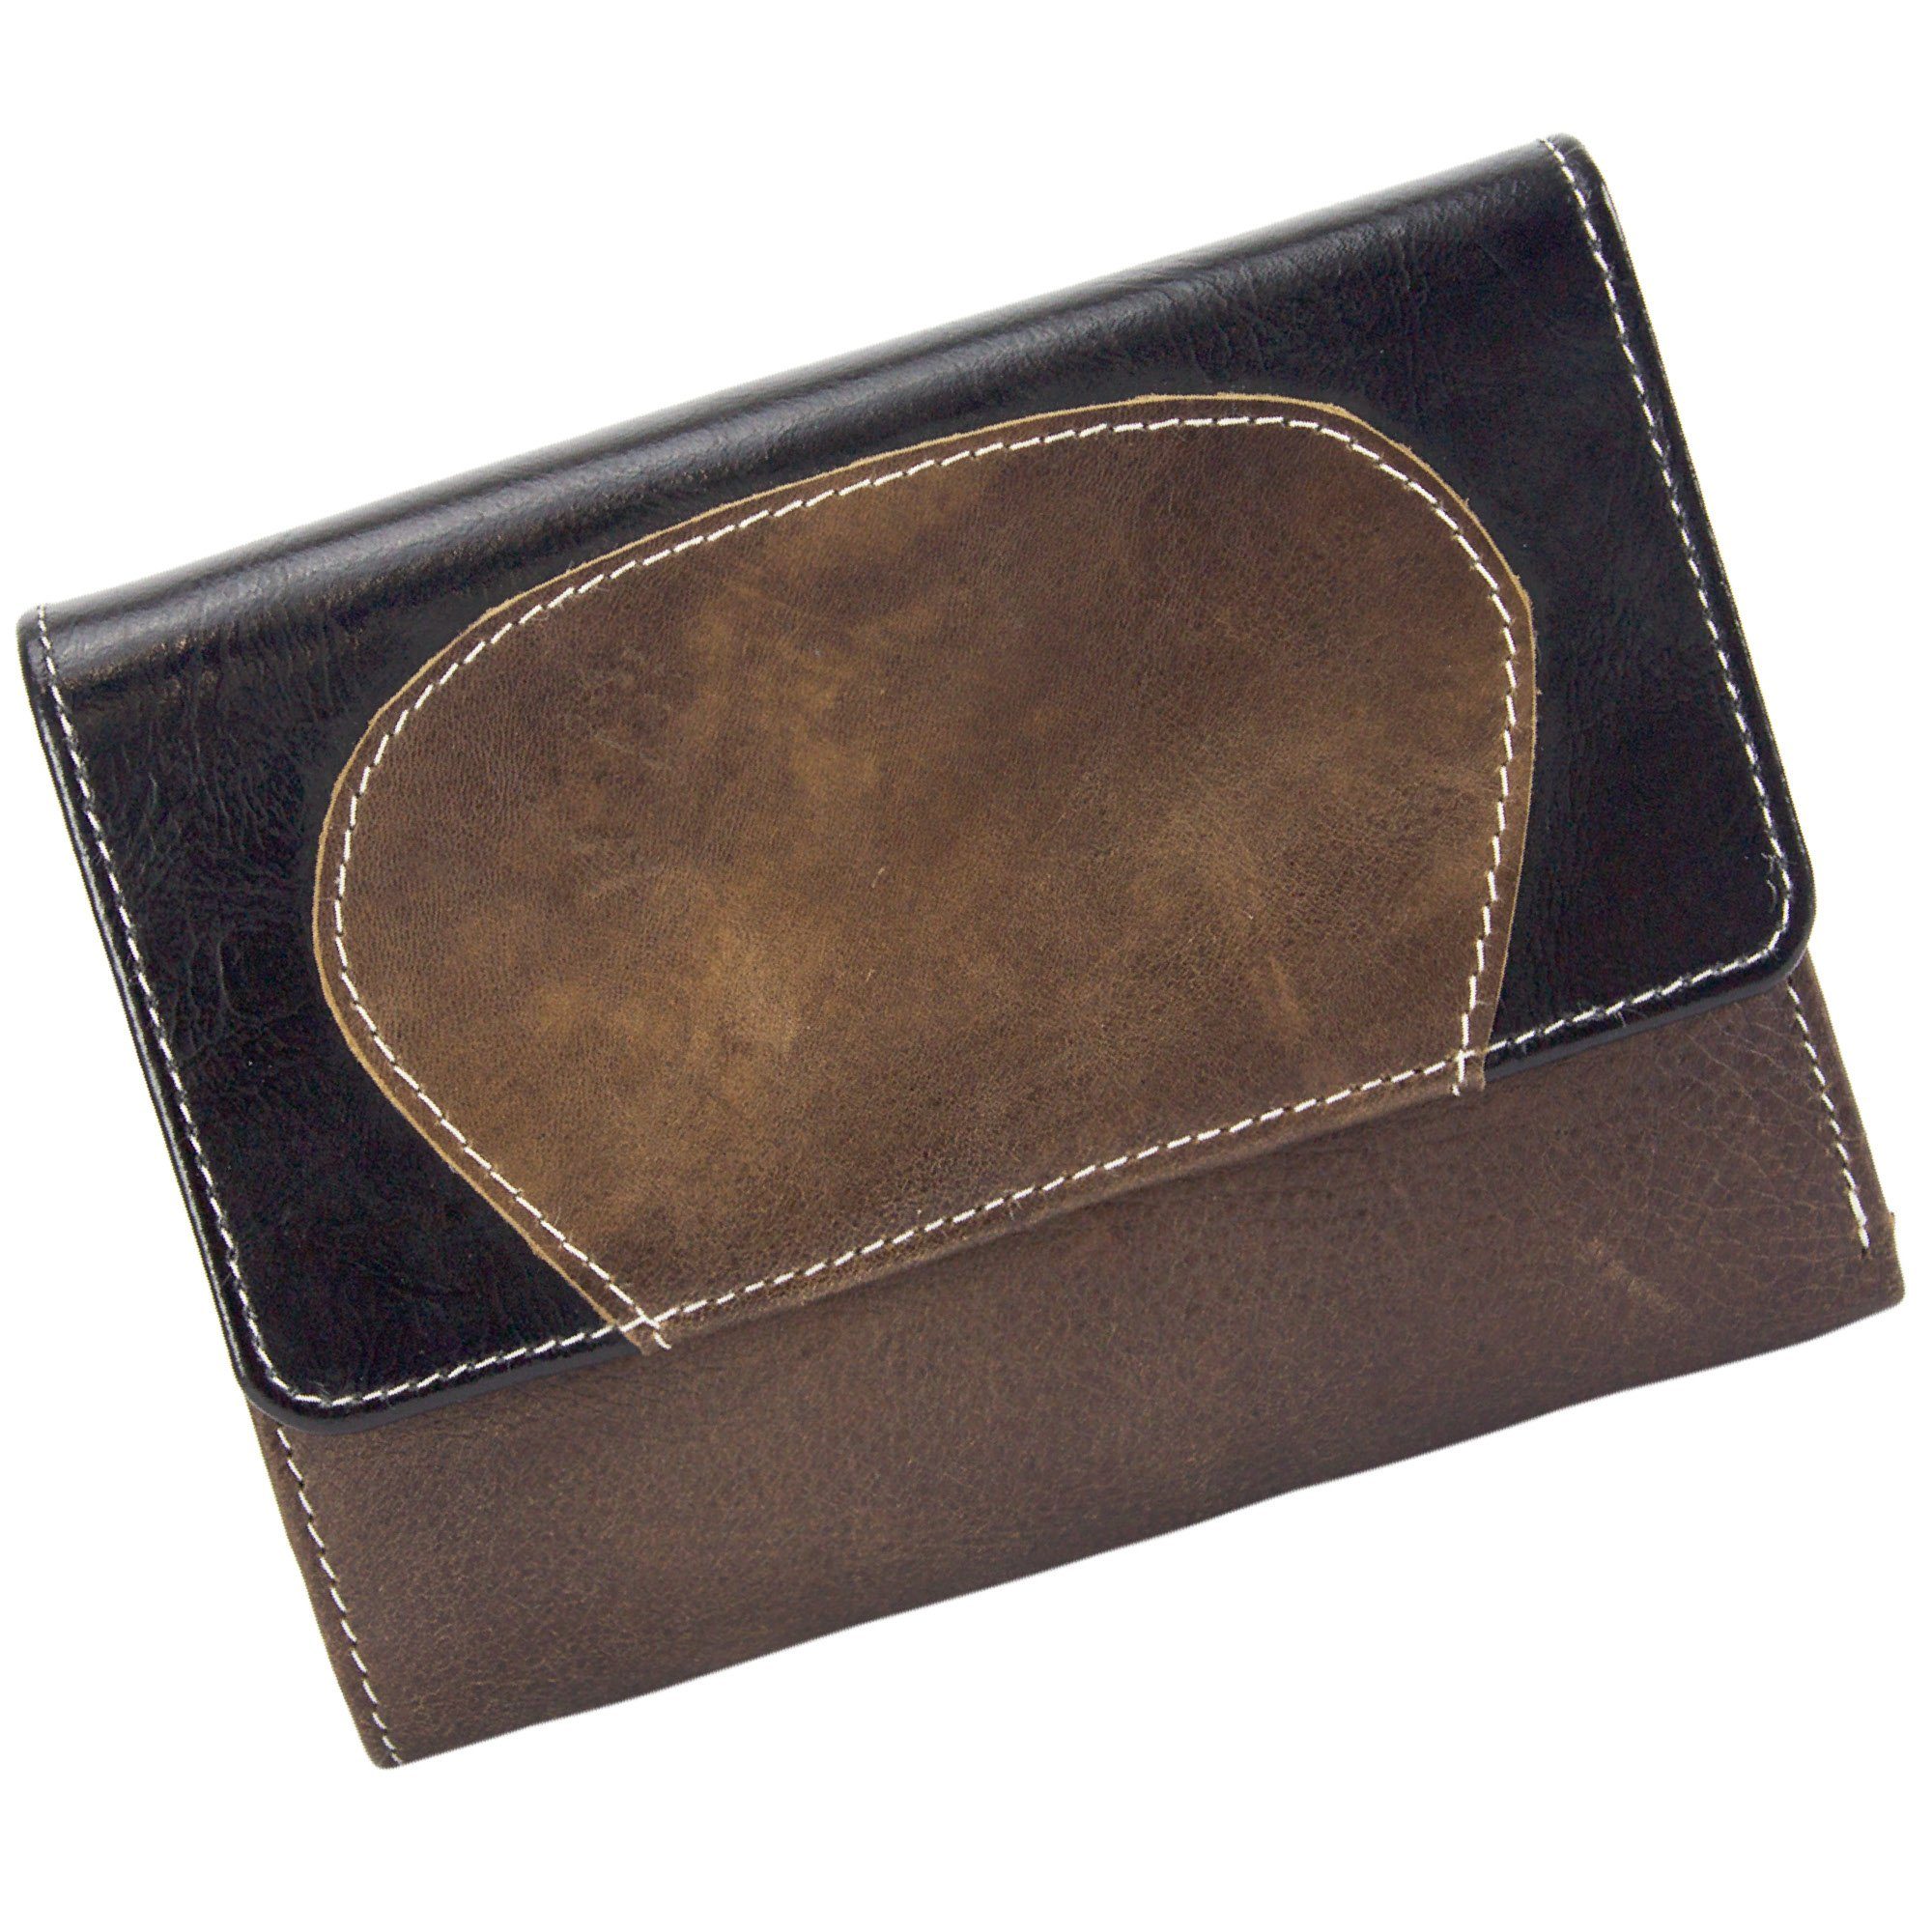 Sunsa Geldbörse echt Leder Geldbörse Damen Geldbeutel Portemonnaie große Brieftasche, echt Leder, aus recycelten Lederresten, mit RFID-Schutz, Unisex schwarz/braun